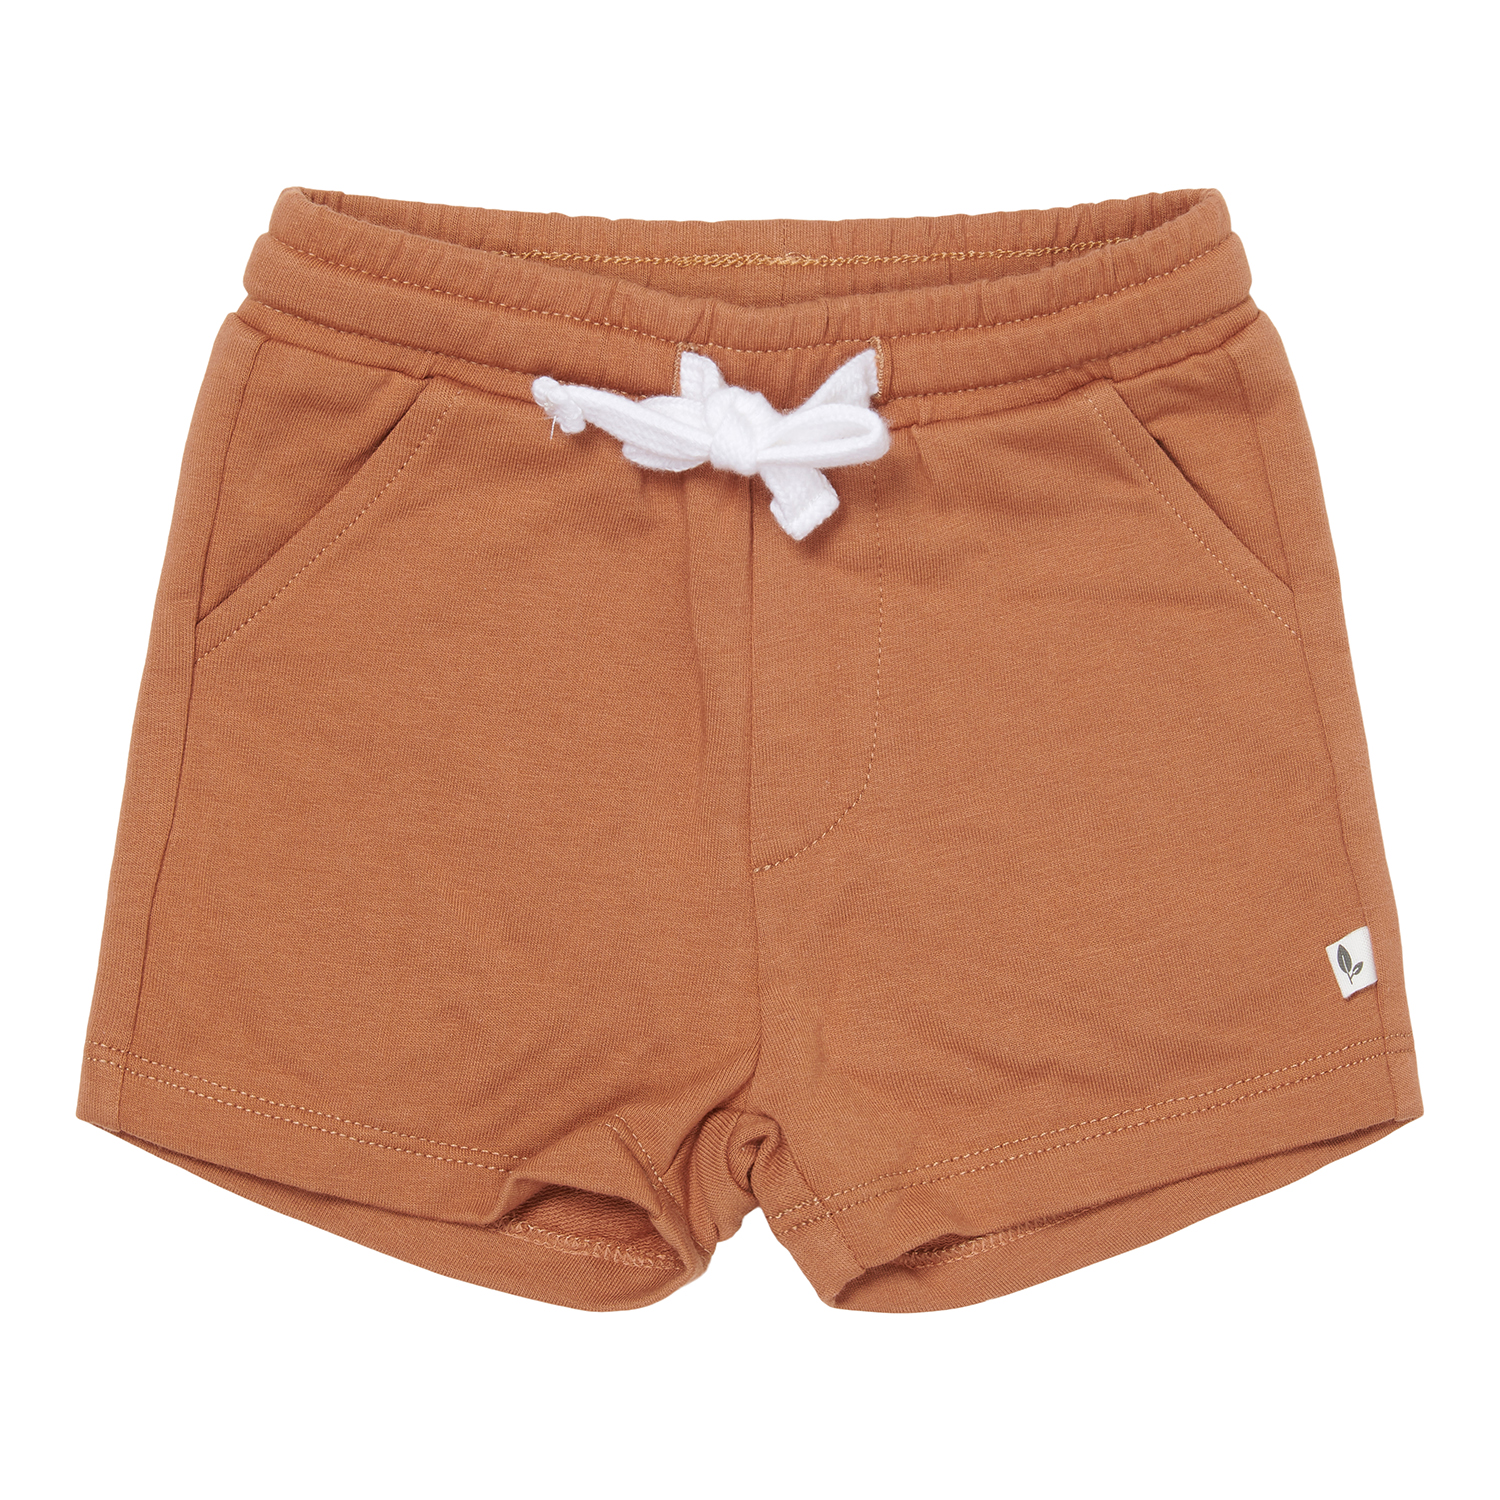 Kurze Hose / Shorts mit Taschen Vintage Sunny Stripes orange (Gr. 80)